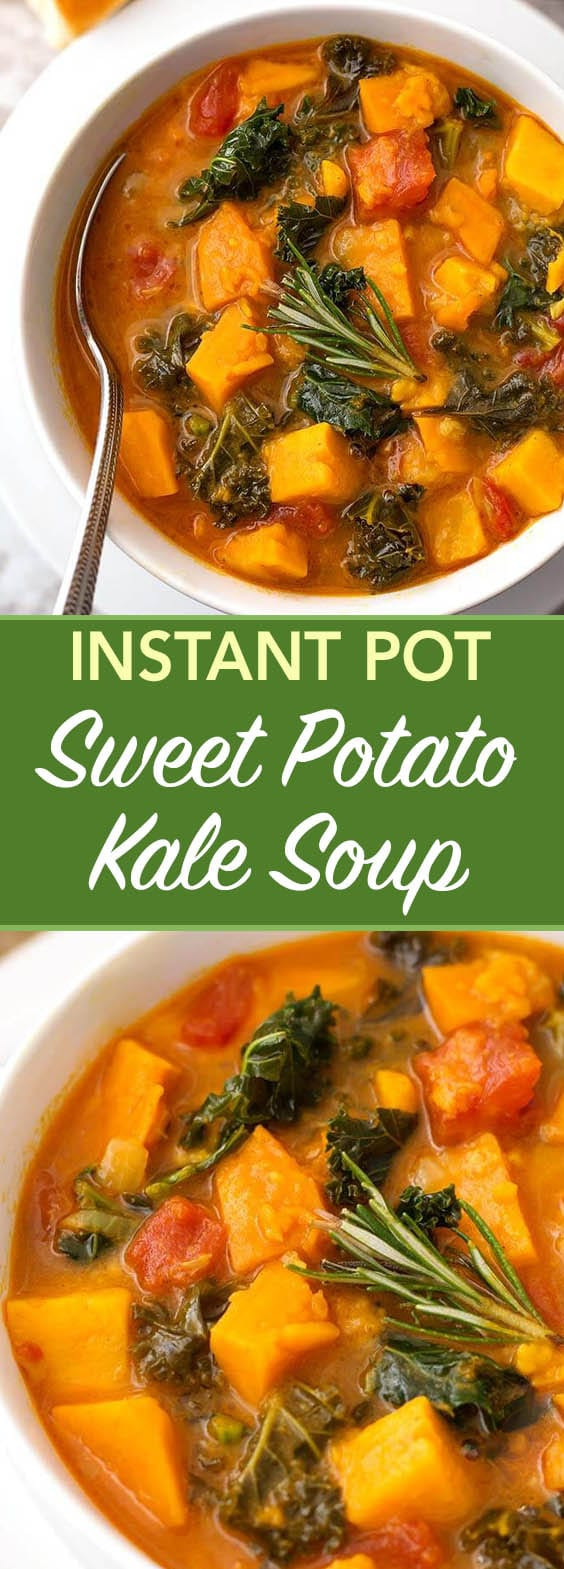 Sweet Potato Soup Instant Pot
 Instant Pot Sweet Potato Kale Soup